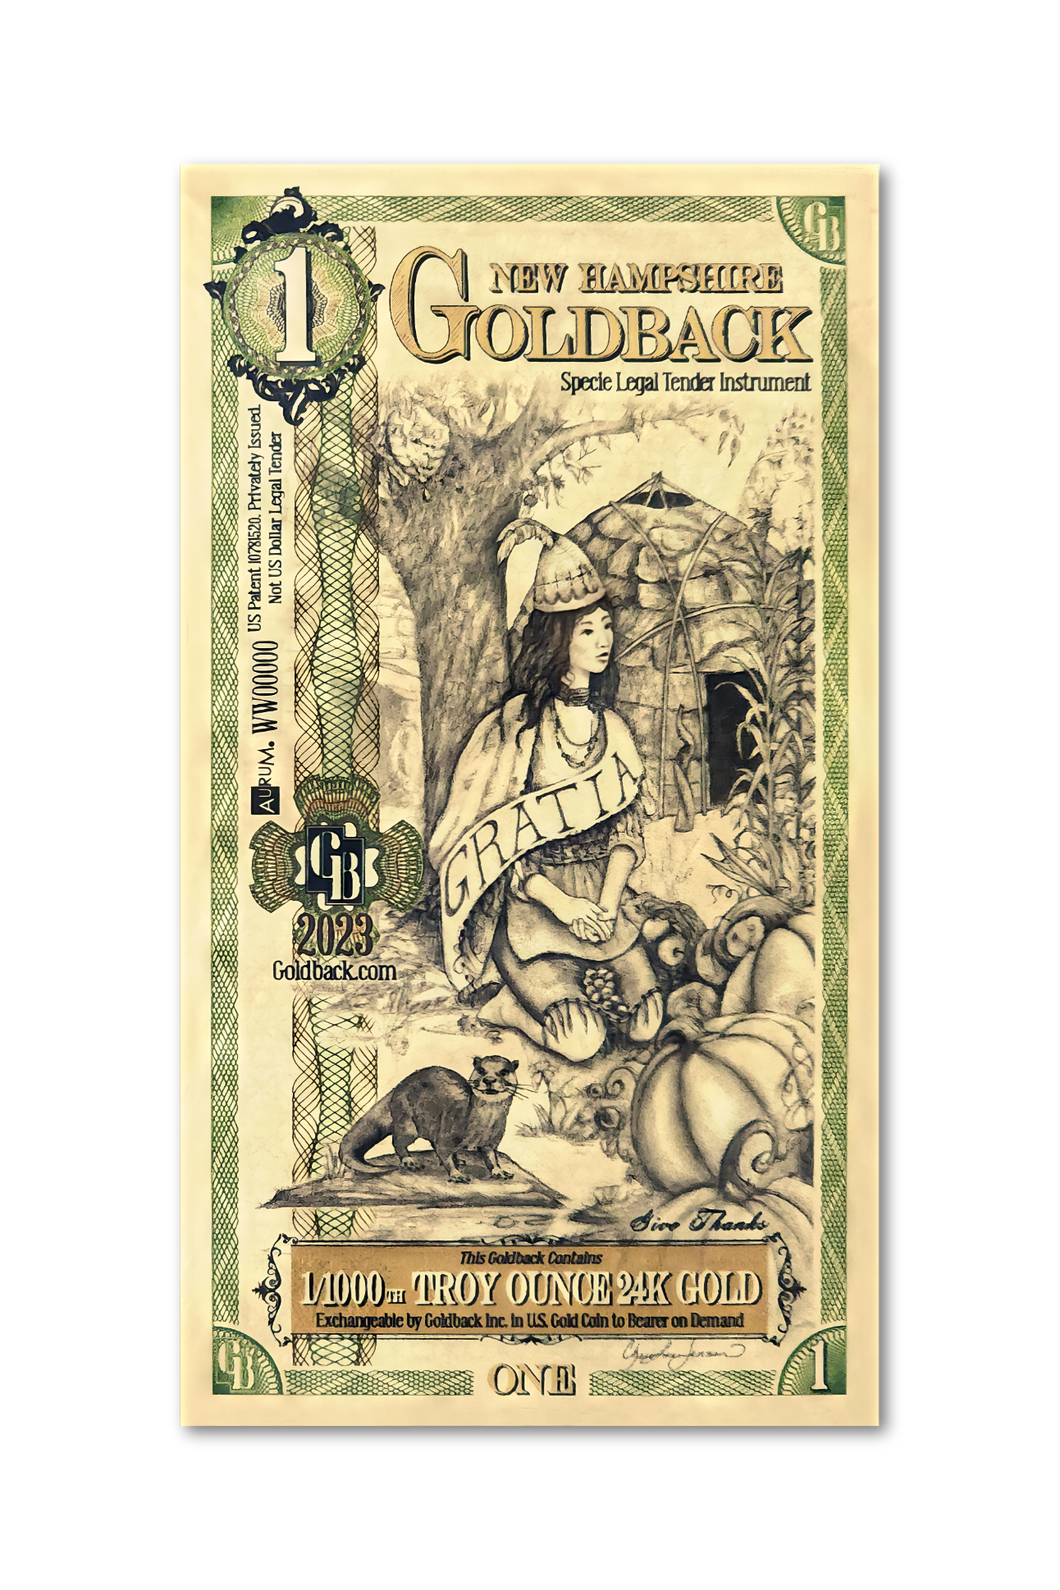 1 New Hampshire Goldback (100 Pack) - Aurum Gold Note (24k)- Zion Metals